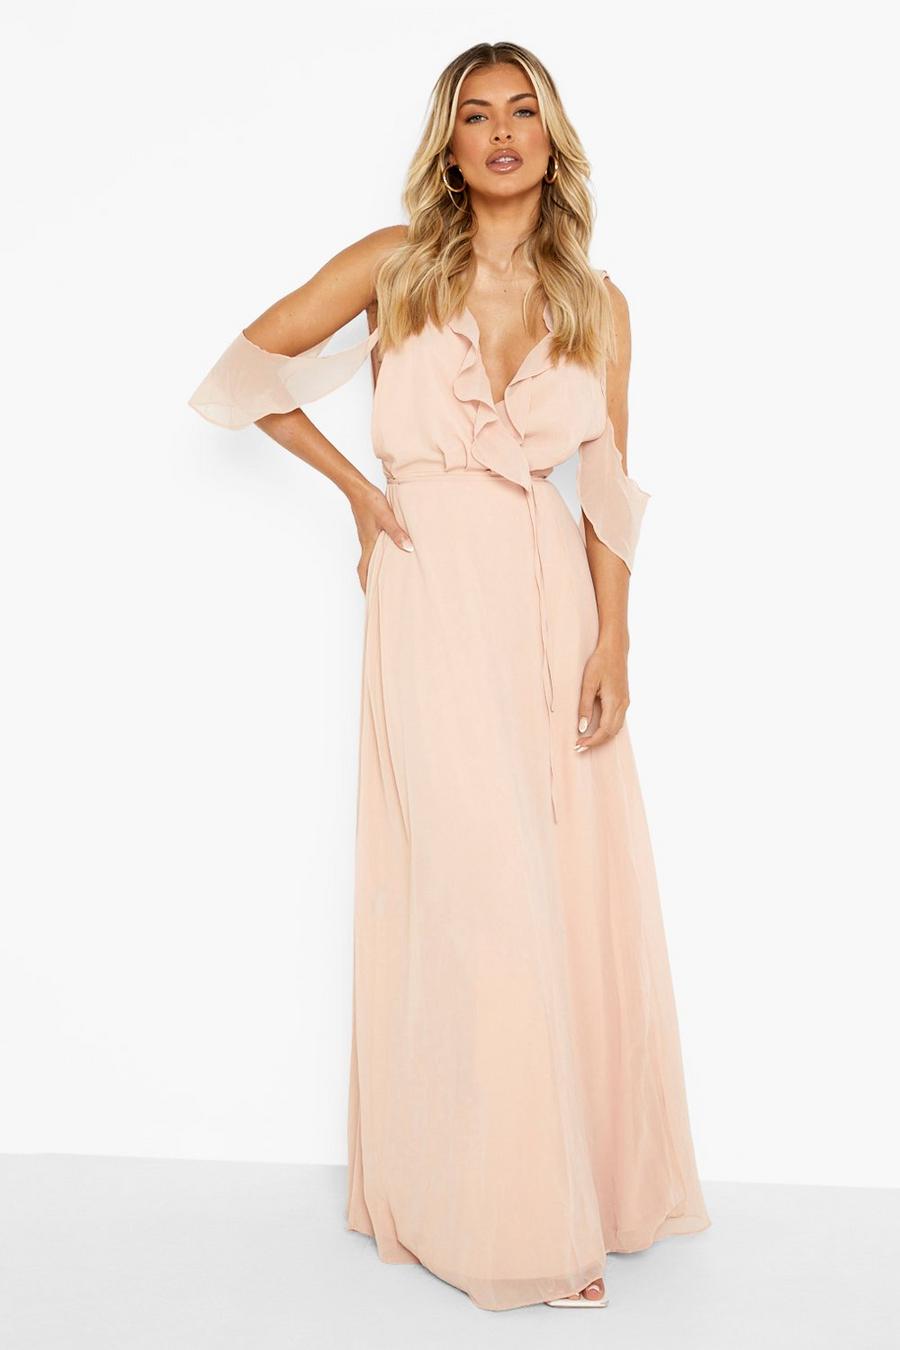 Blush pink Boutique Lång chiffongklänning i omlottmodell med volanger